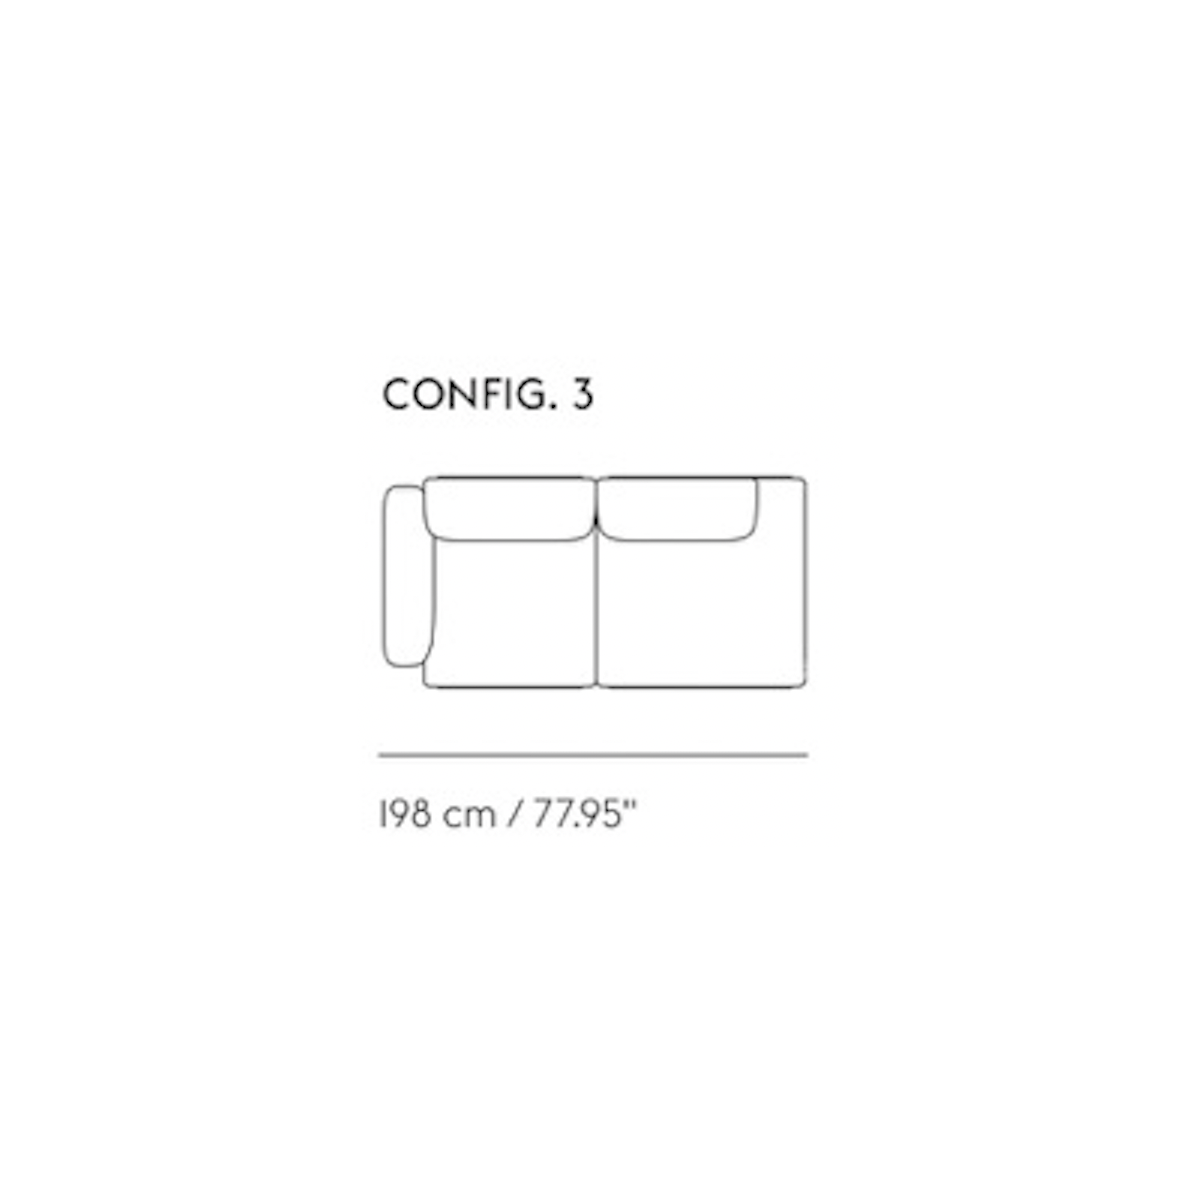 config 3 – In Situ 2-seater